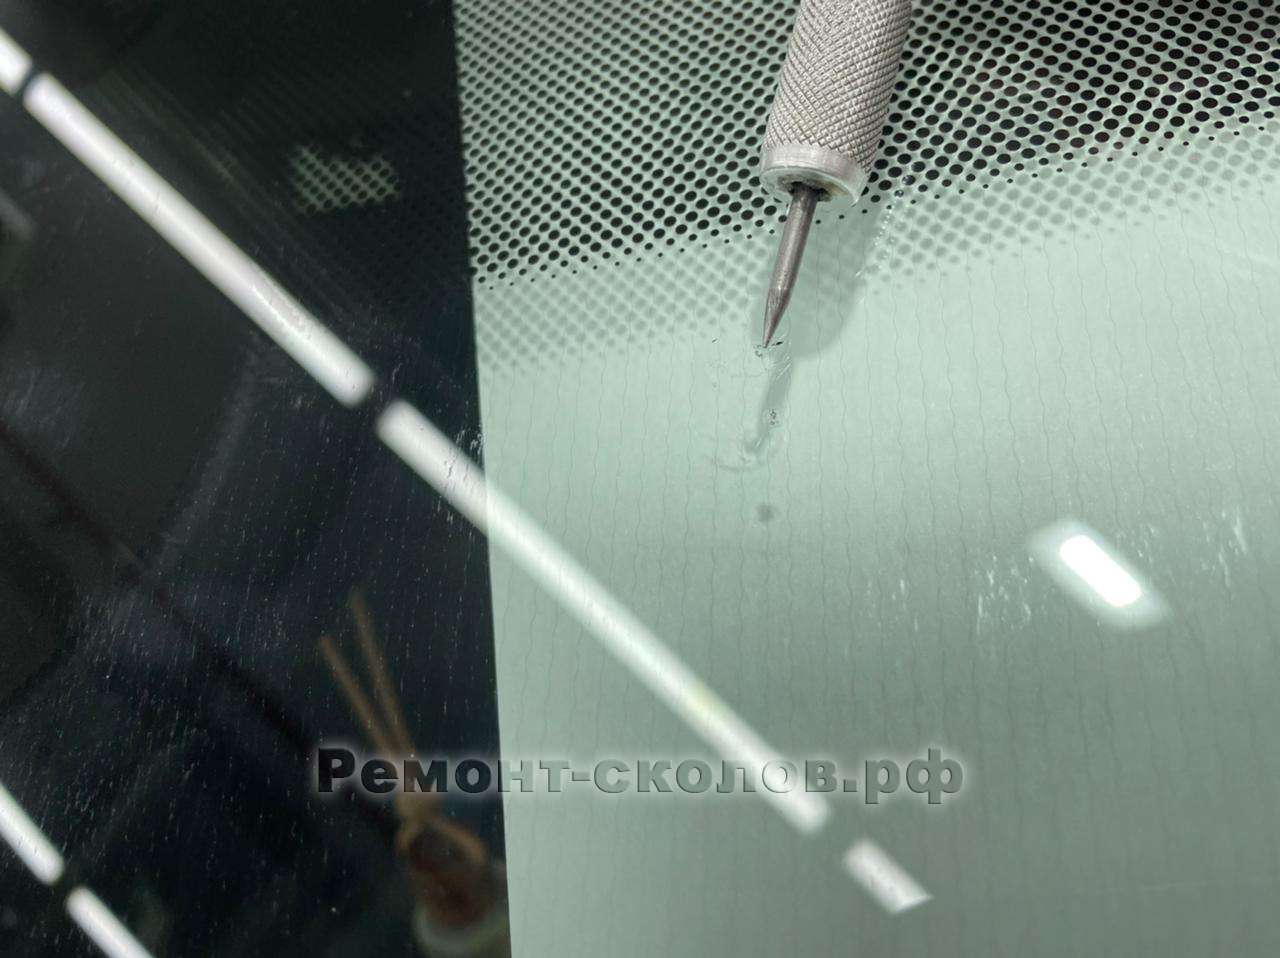 Mini Cooper ремонт скола на лобовом стекле в ЮЗАО